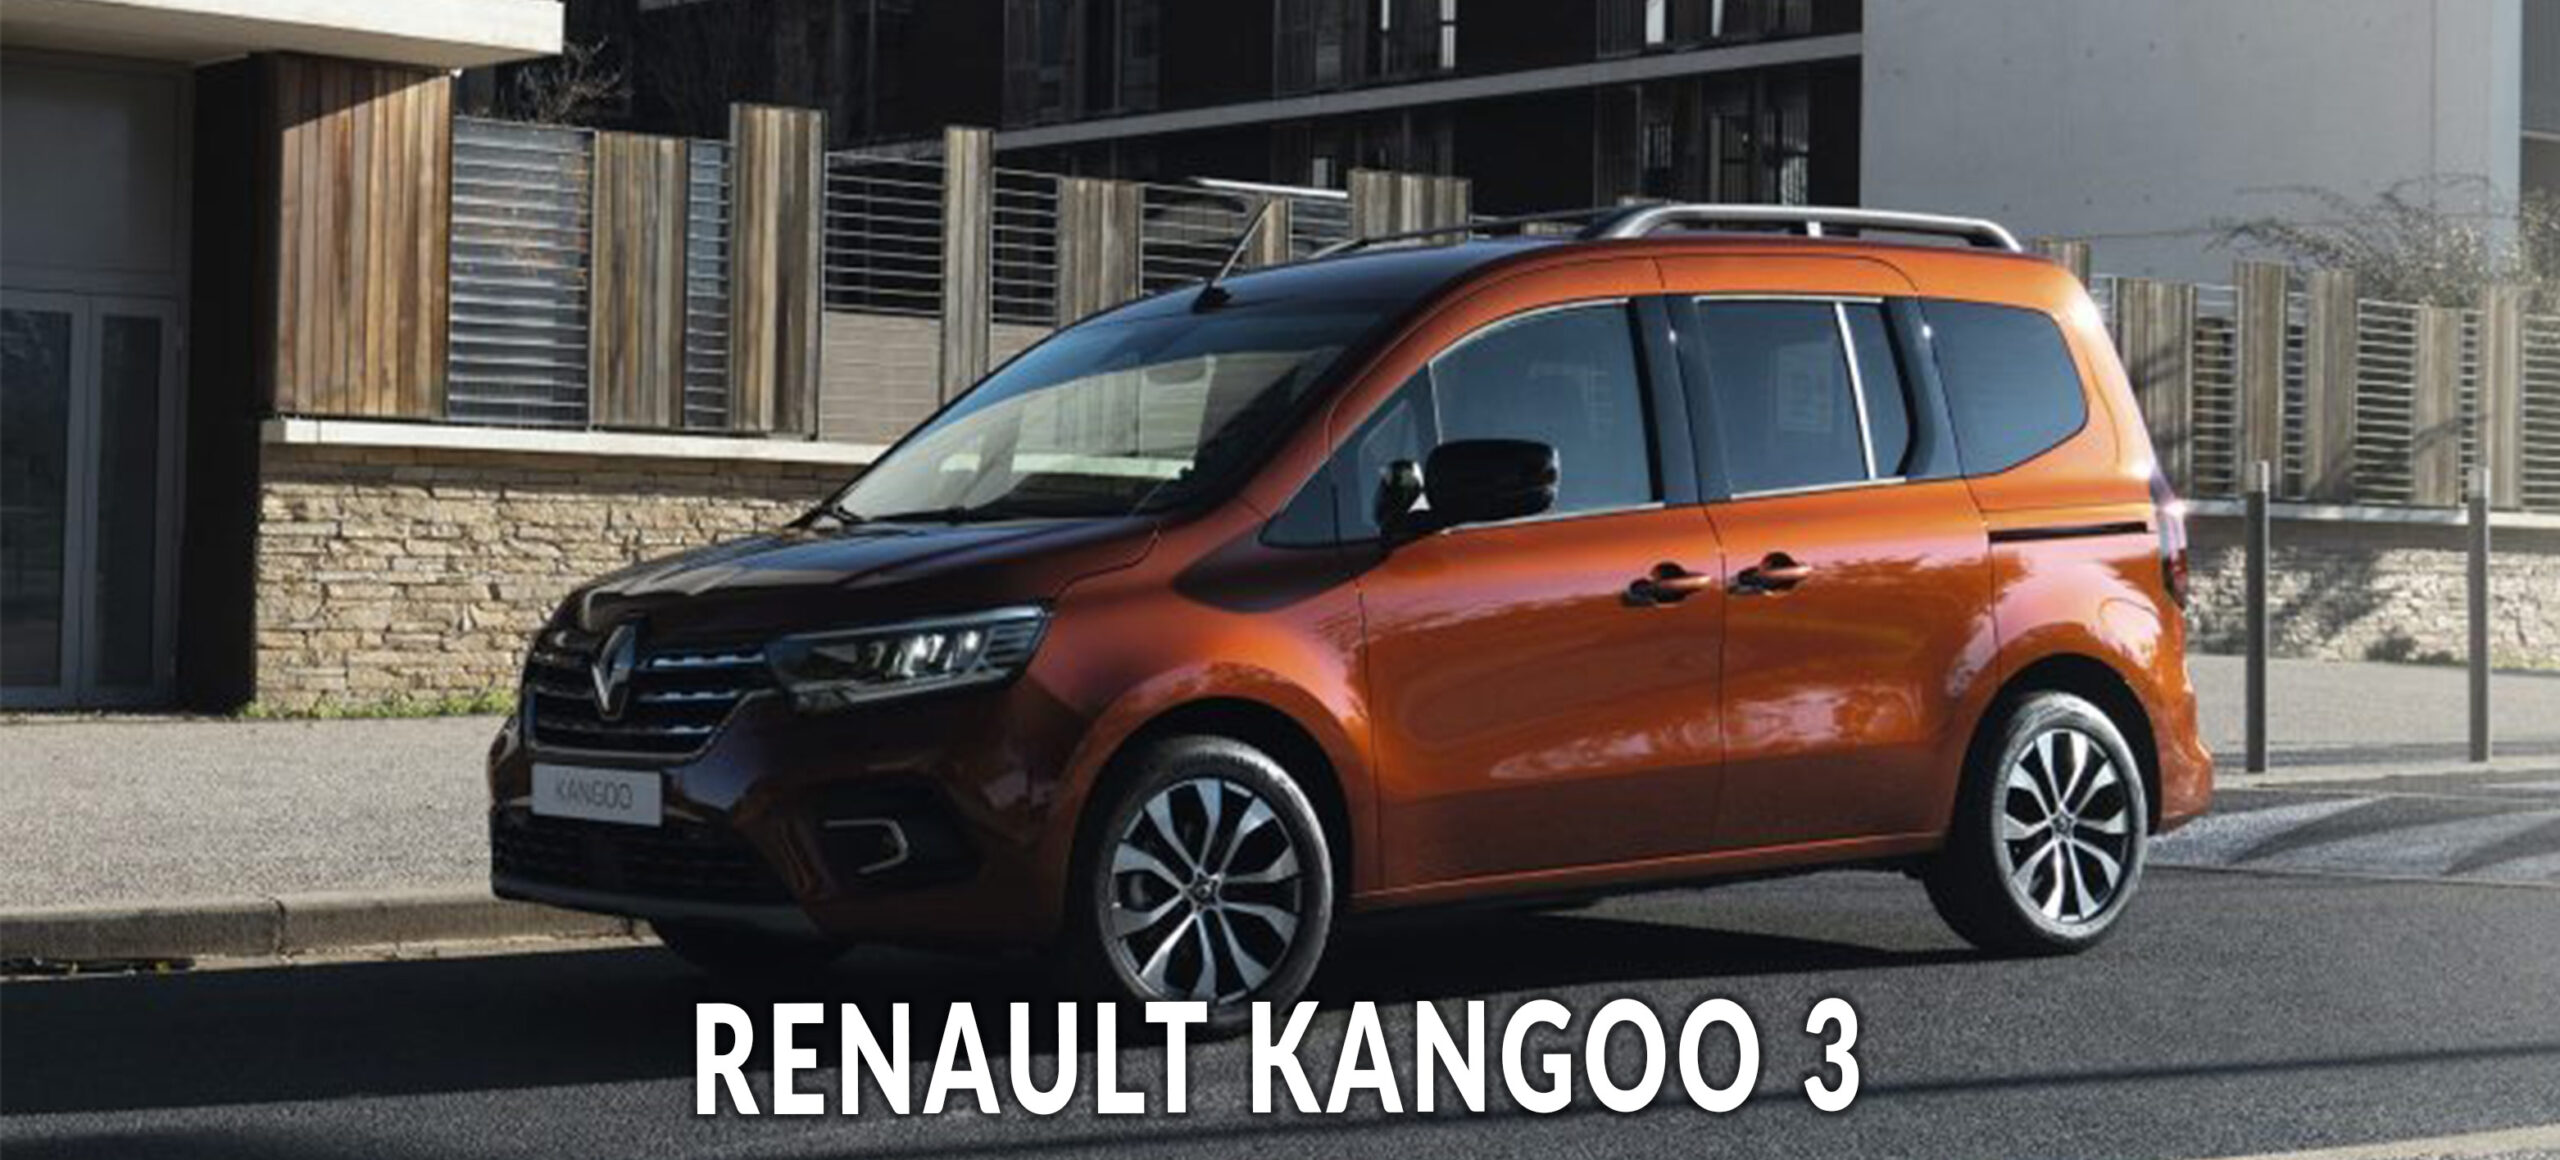 Renault Kangoo 3 : que vaut le ludospace ?